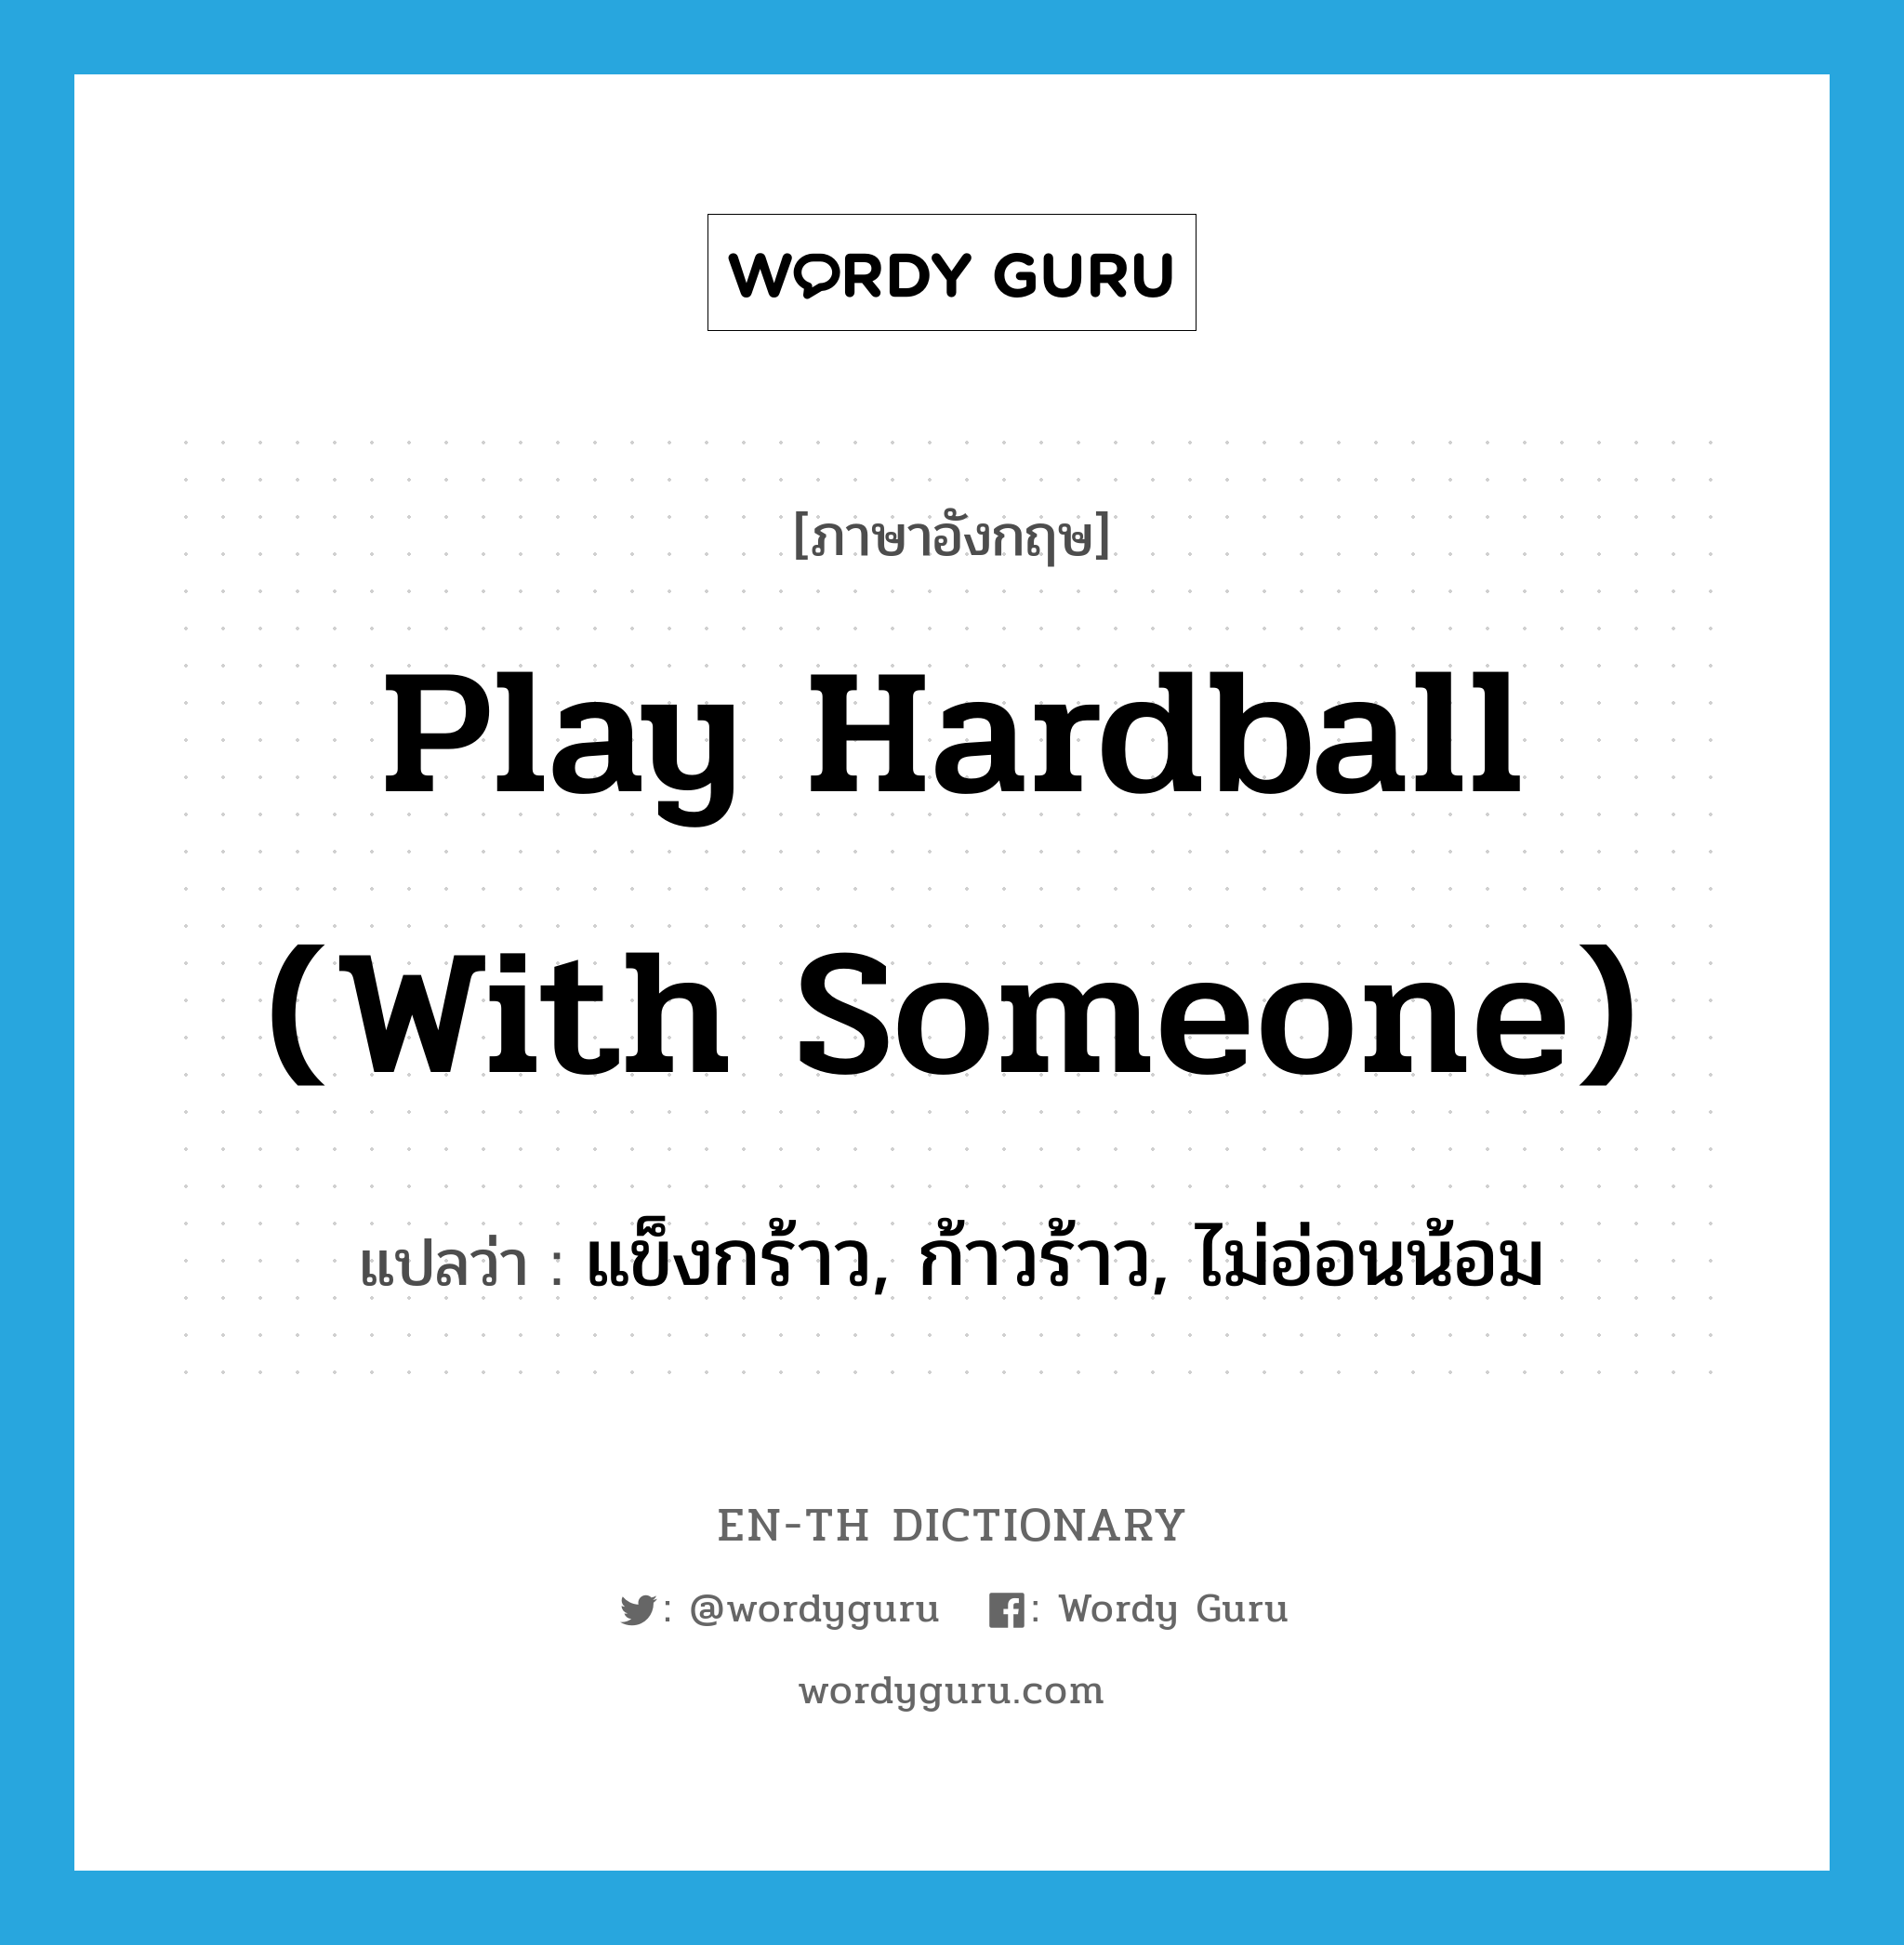 แข็งกร้าว, ก้าวร้าว, ไม่อ่อนน้อม ภาษาอังกฤษ?, คำศัพท์ภาษาอังกฤษ แข็งกร้าว, ก้าวร้าว, ไม่อ่อนน้อม แปลว่า play hardball (with someone) ประเภท SL หมวด SL